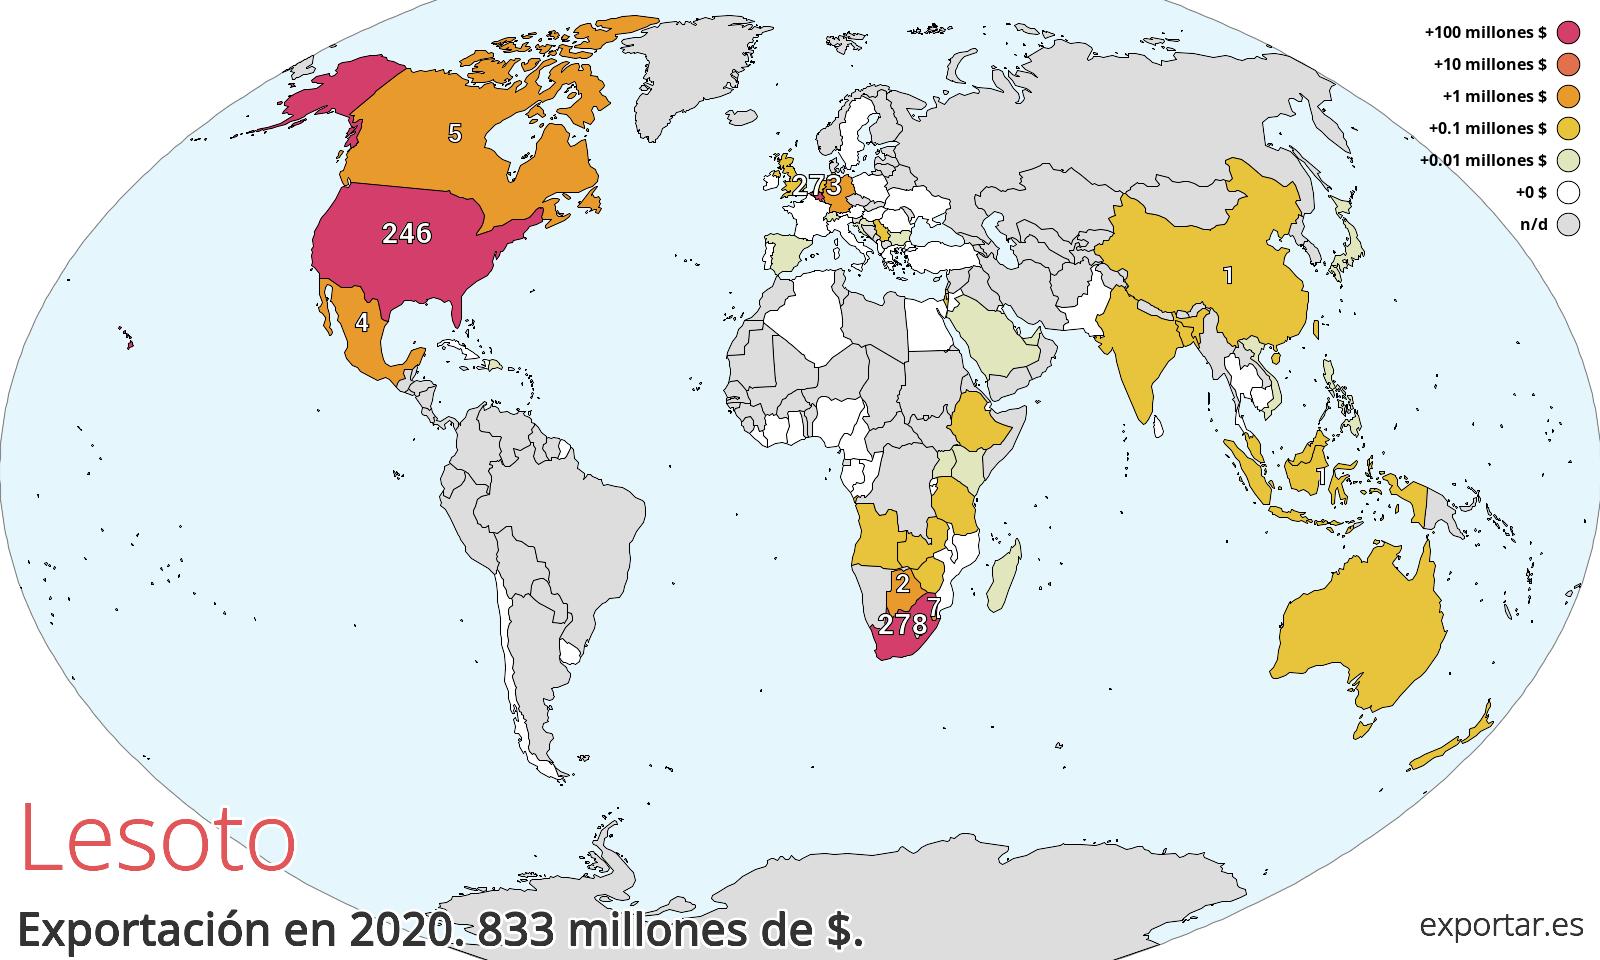 Mapa de exportación de Lesoto en 2020.